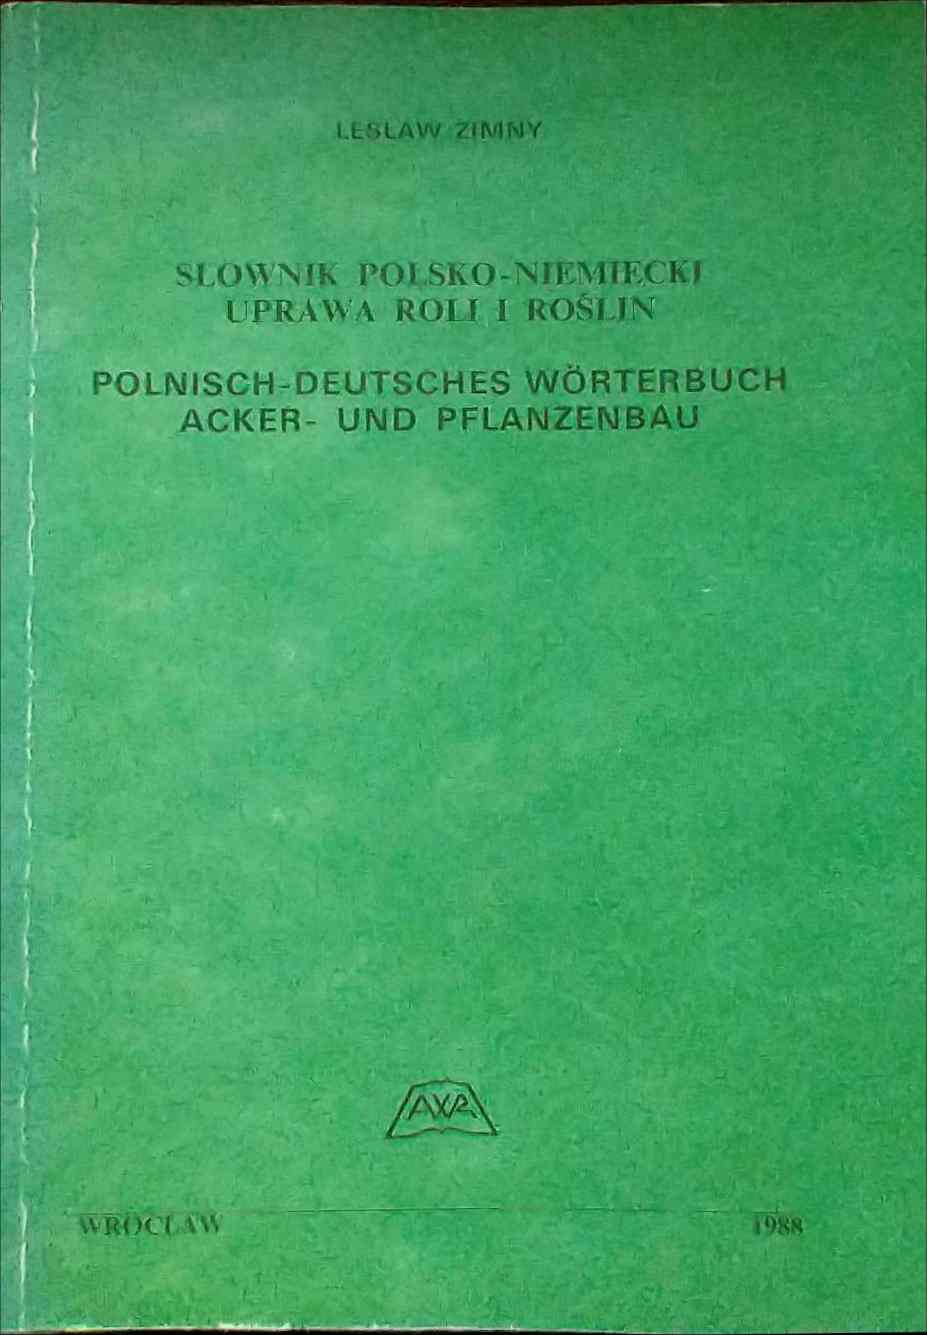 Polnisch-Deutsches Wrterbuch. Acker- und Pflanzenbau - 270 Seiten